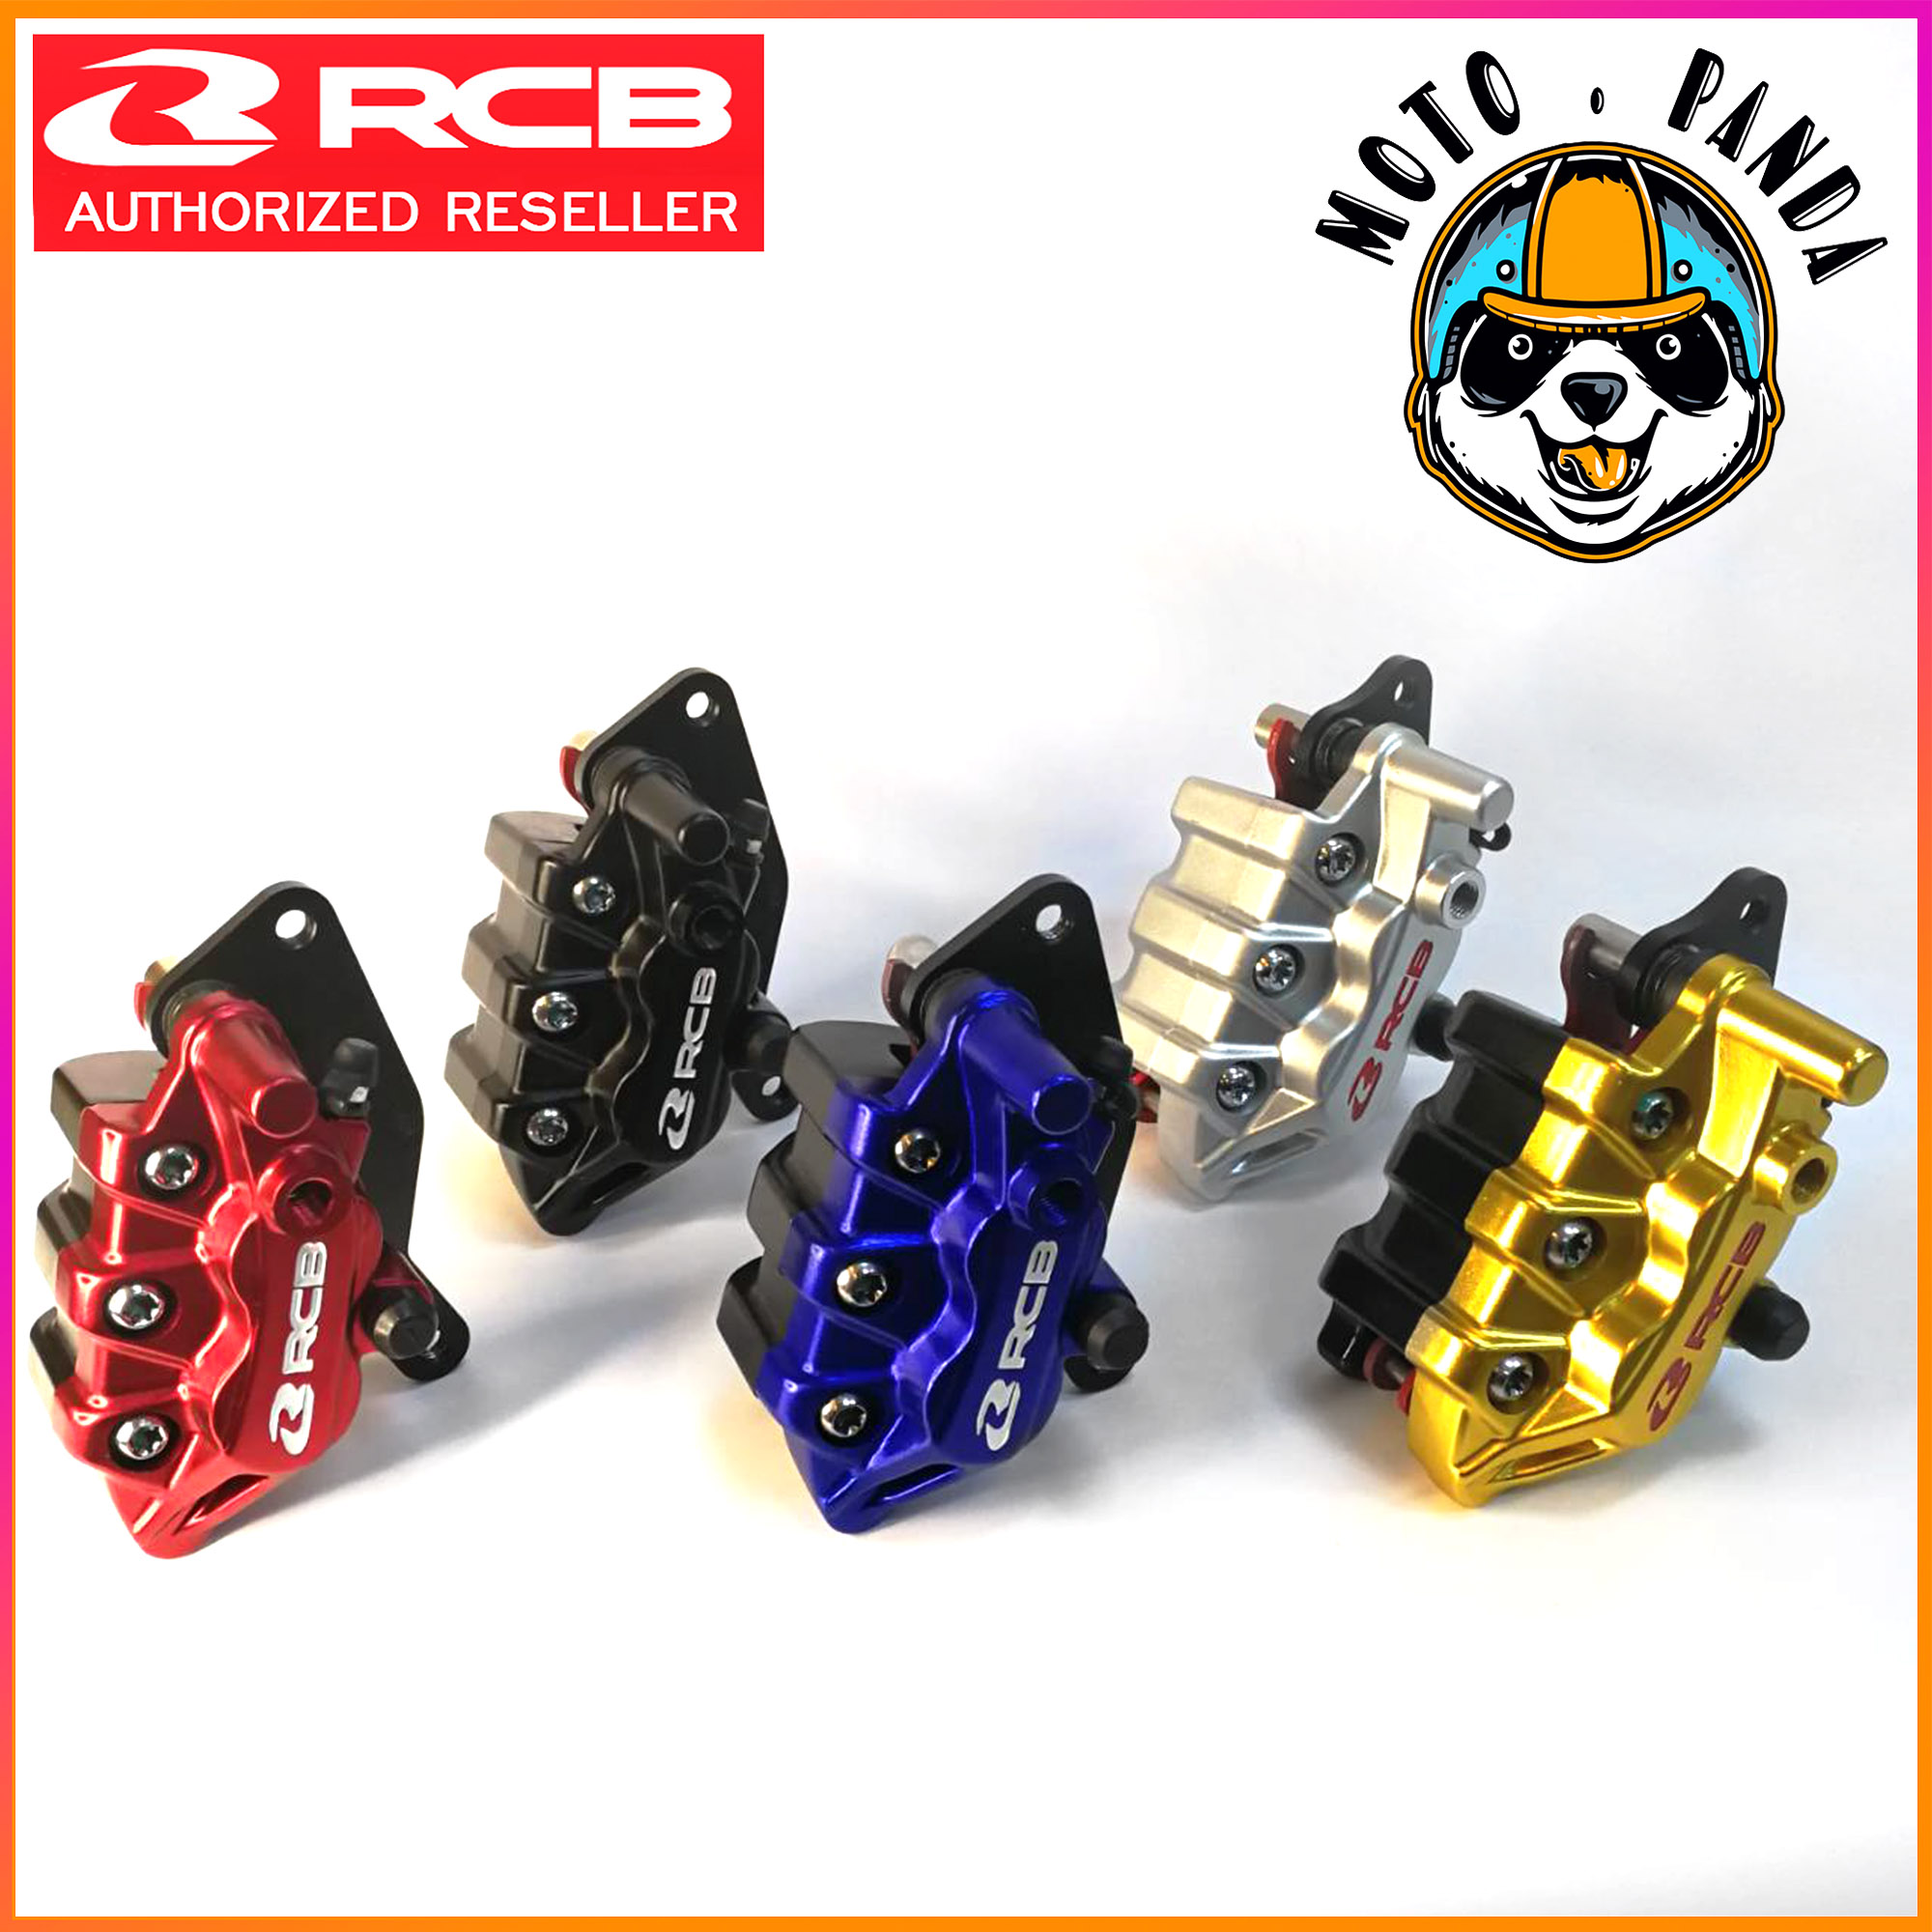 ปั๊มดิสเบรคล่าง (หน้า) RCB Racing Boy แท้ล้าน% สำหรับ Wave ทุกรุ่น, MSX, R15 เก่า-ใหม่, M SLAZ, Scoopy, Click, Exciter, Aerox, Spark, CBR 150 มีขาจับตรงรุ่นทุกรุ่น